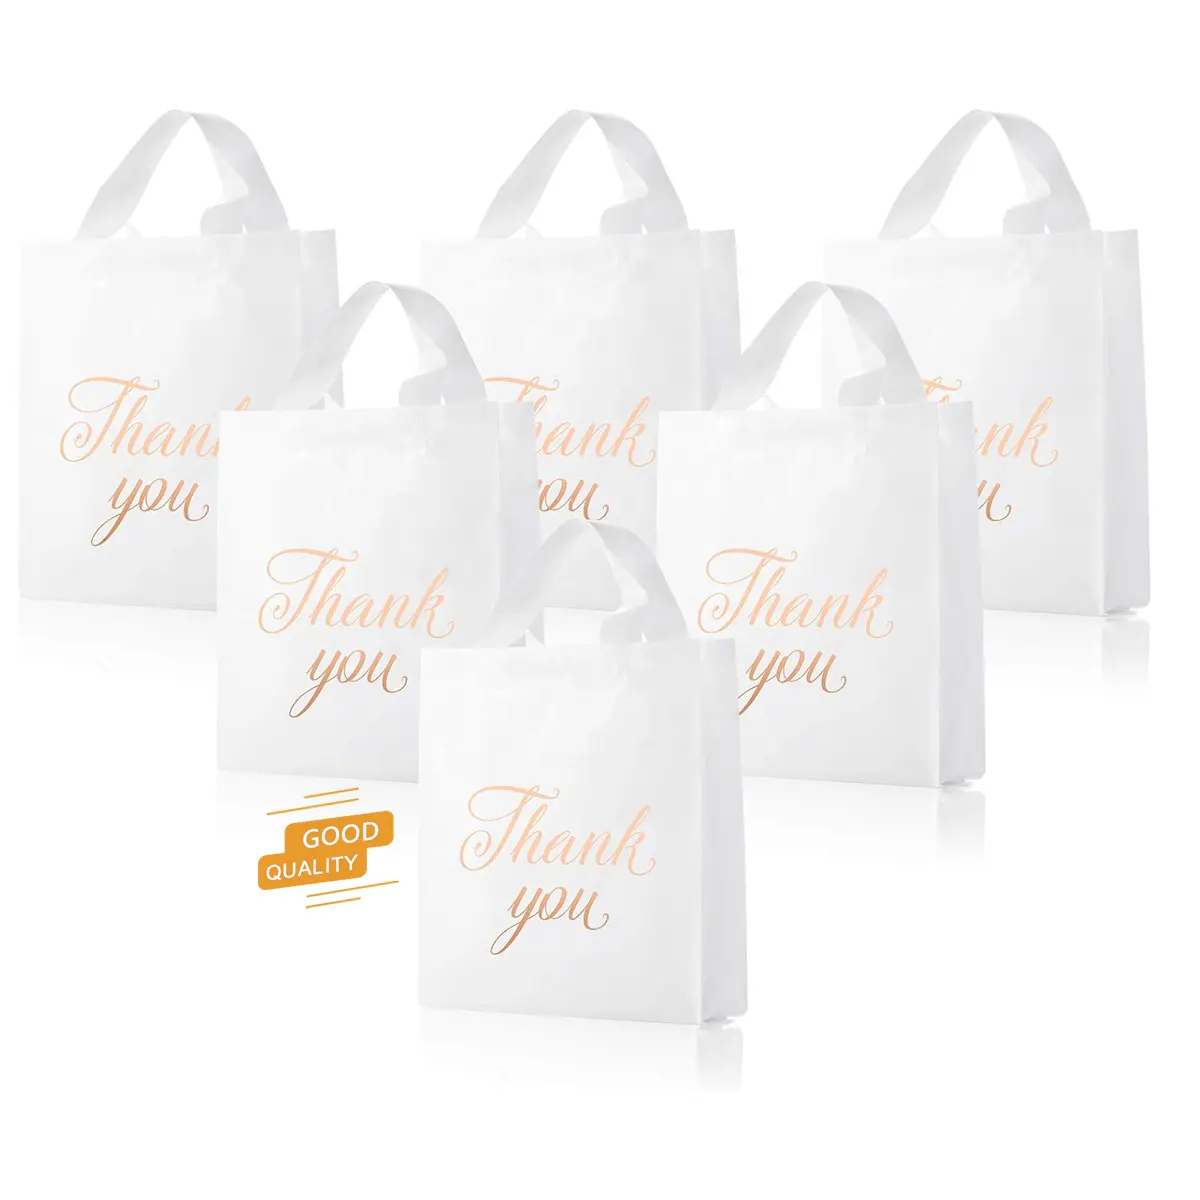 Prezzo all'ingrosso a buon mercato PE imballaggio sacchetto di plastica Shopping Bag con Logo personalizzato per lo Shopping regalo